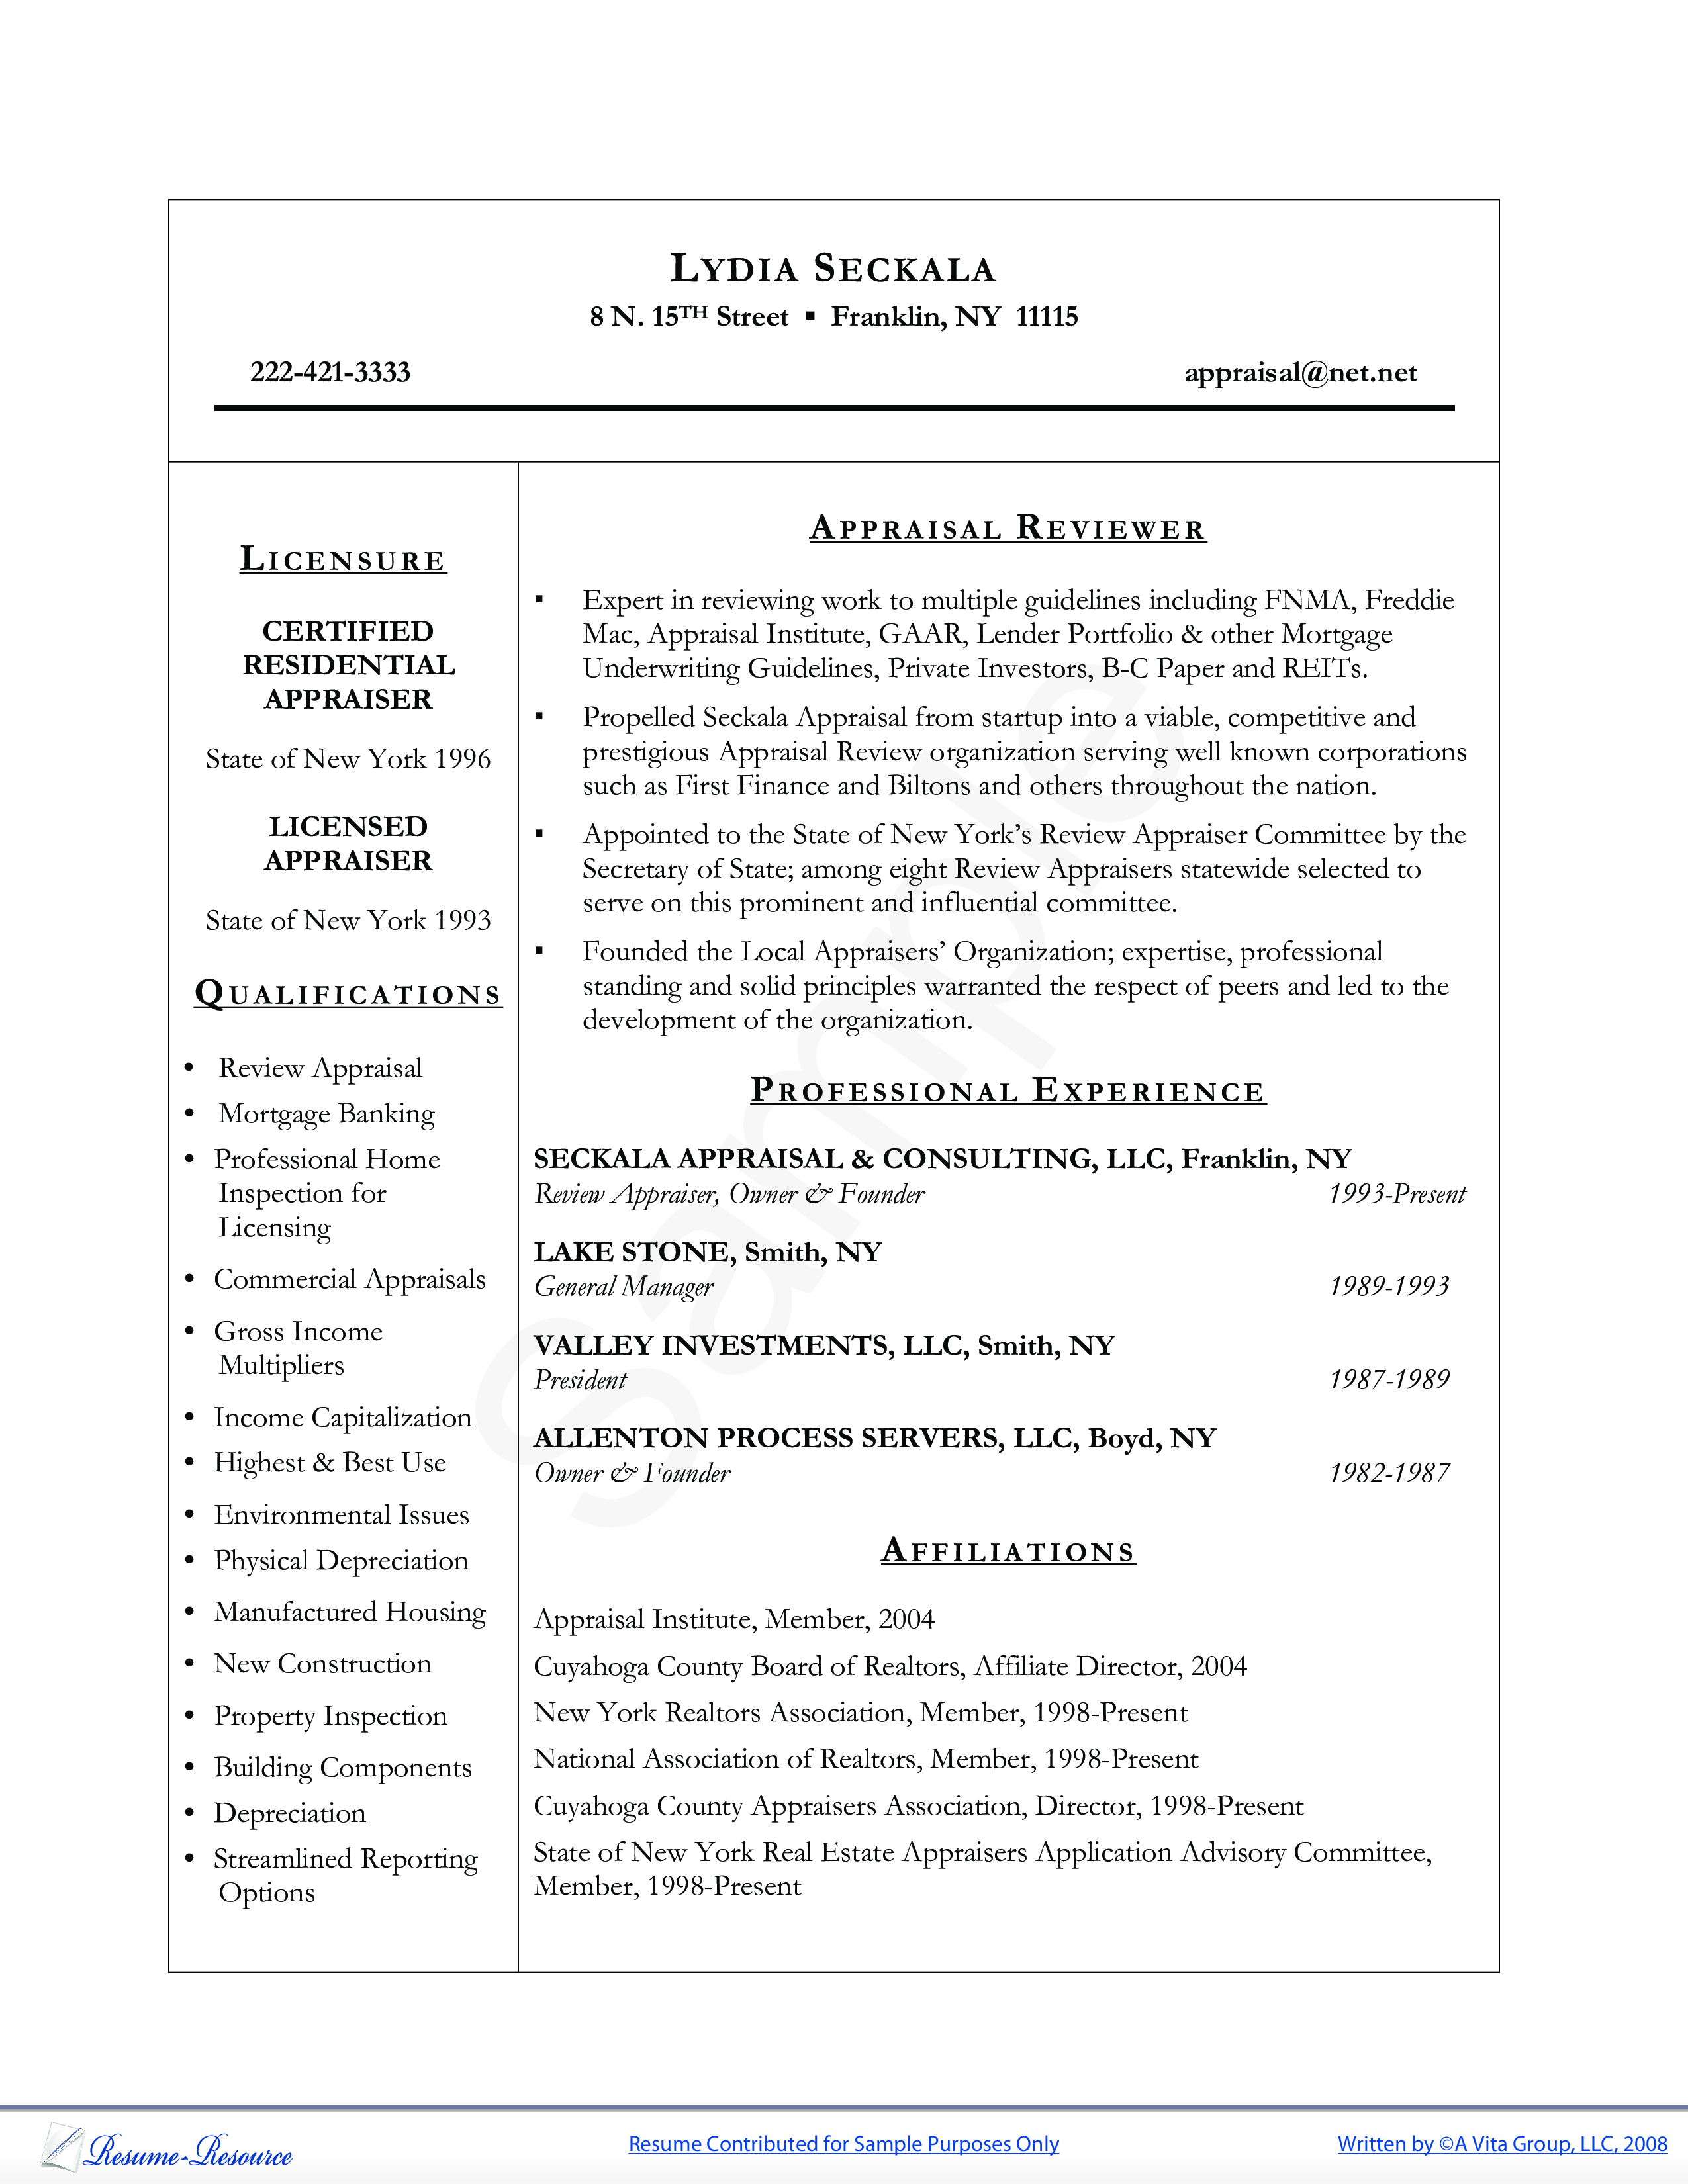 appraiser resume sample